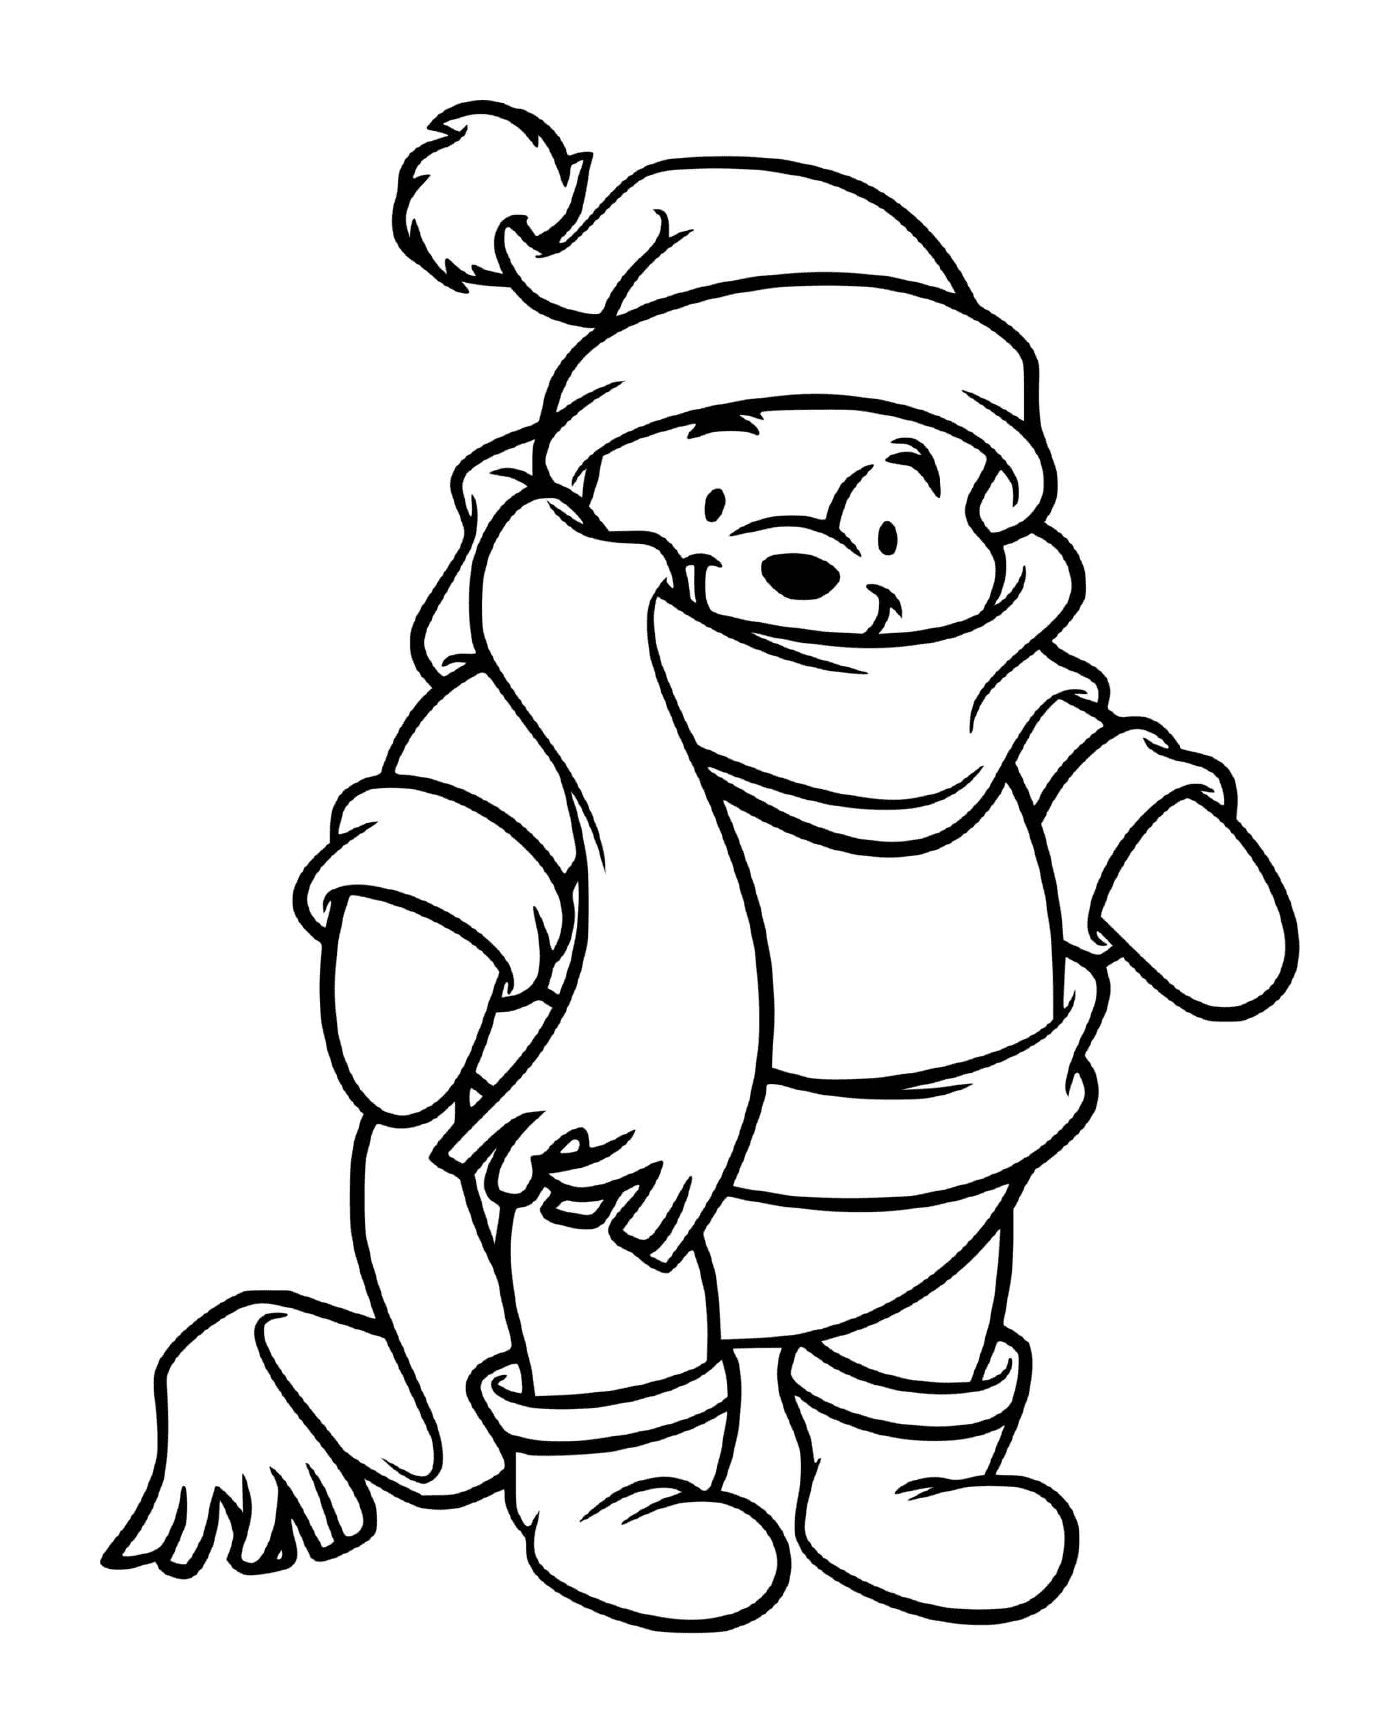  Winnie Bär gut gekleidet für den Winter 